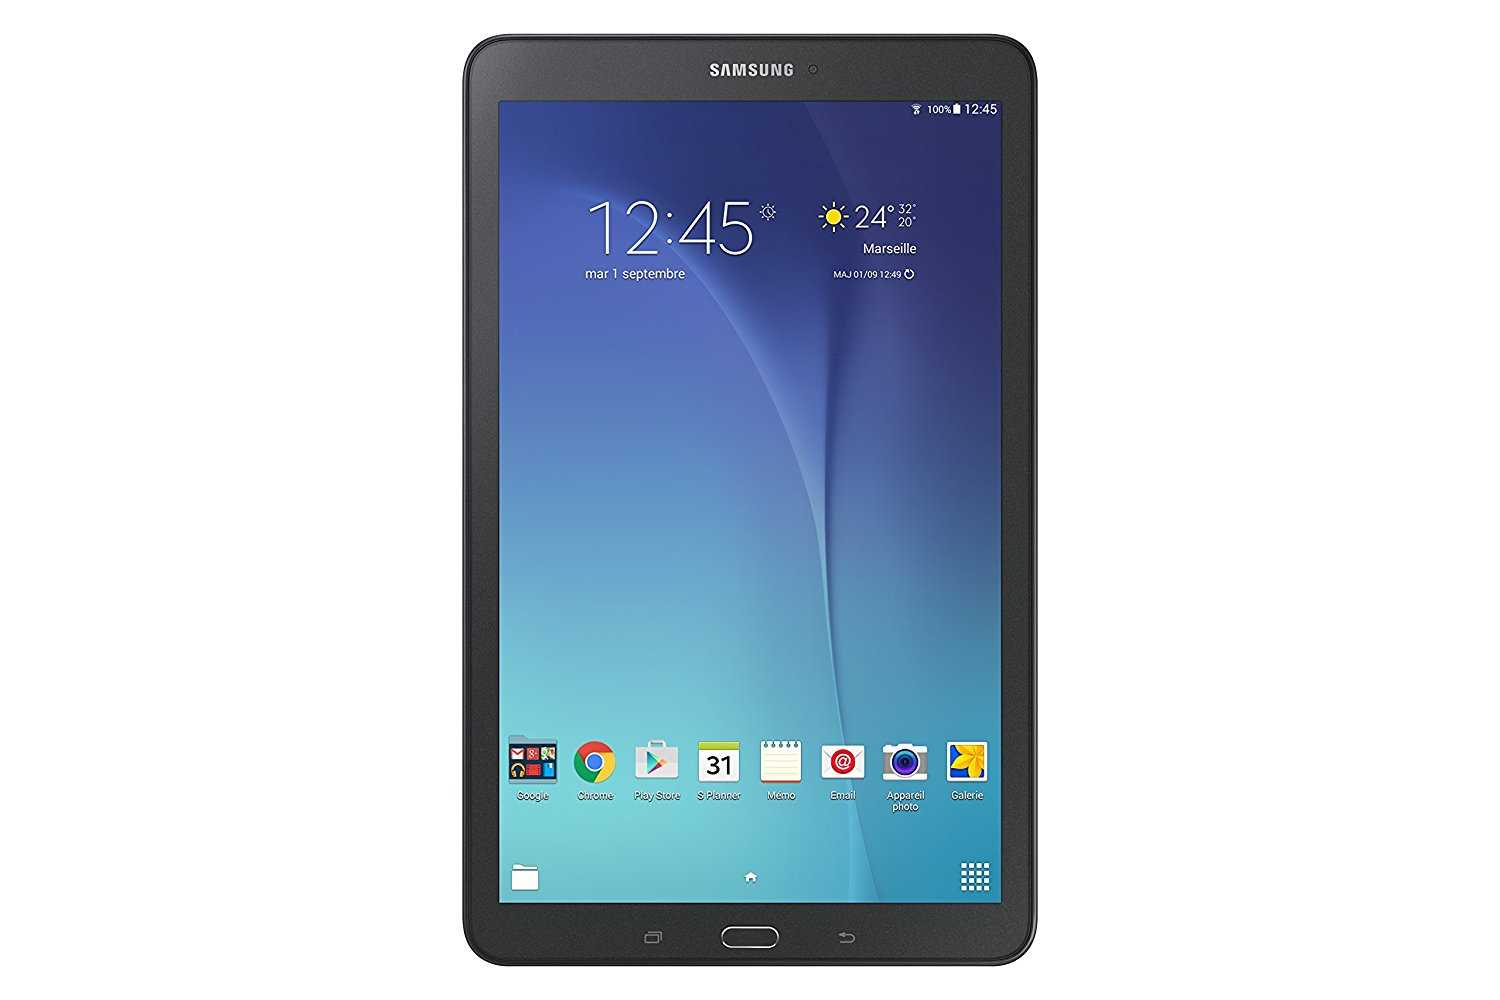 Samsung ativ smart pc pro xe700t1c-a0aru 128gb dock (черный) - купить , скидки, цена, отзывы, обзор, характеристики - планшеты